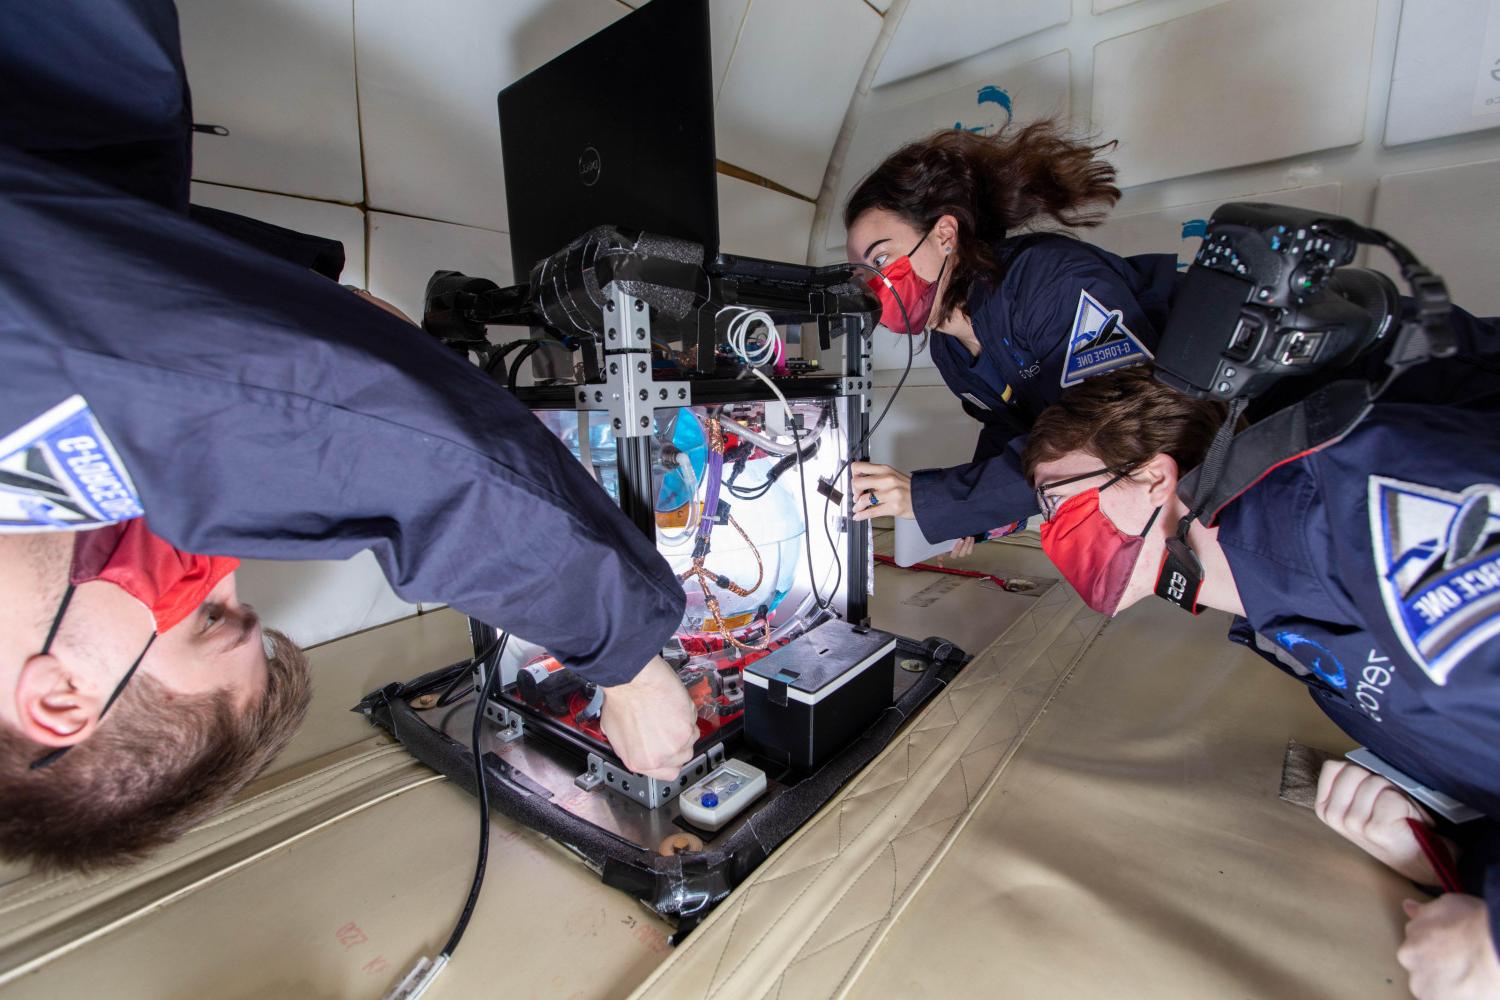 bv伟德ios下载学院微重力小组的成员在美国宇航局进行研究?s zero g aircraft.